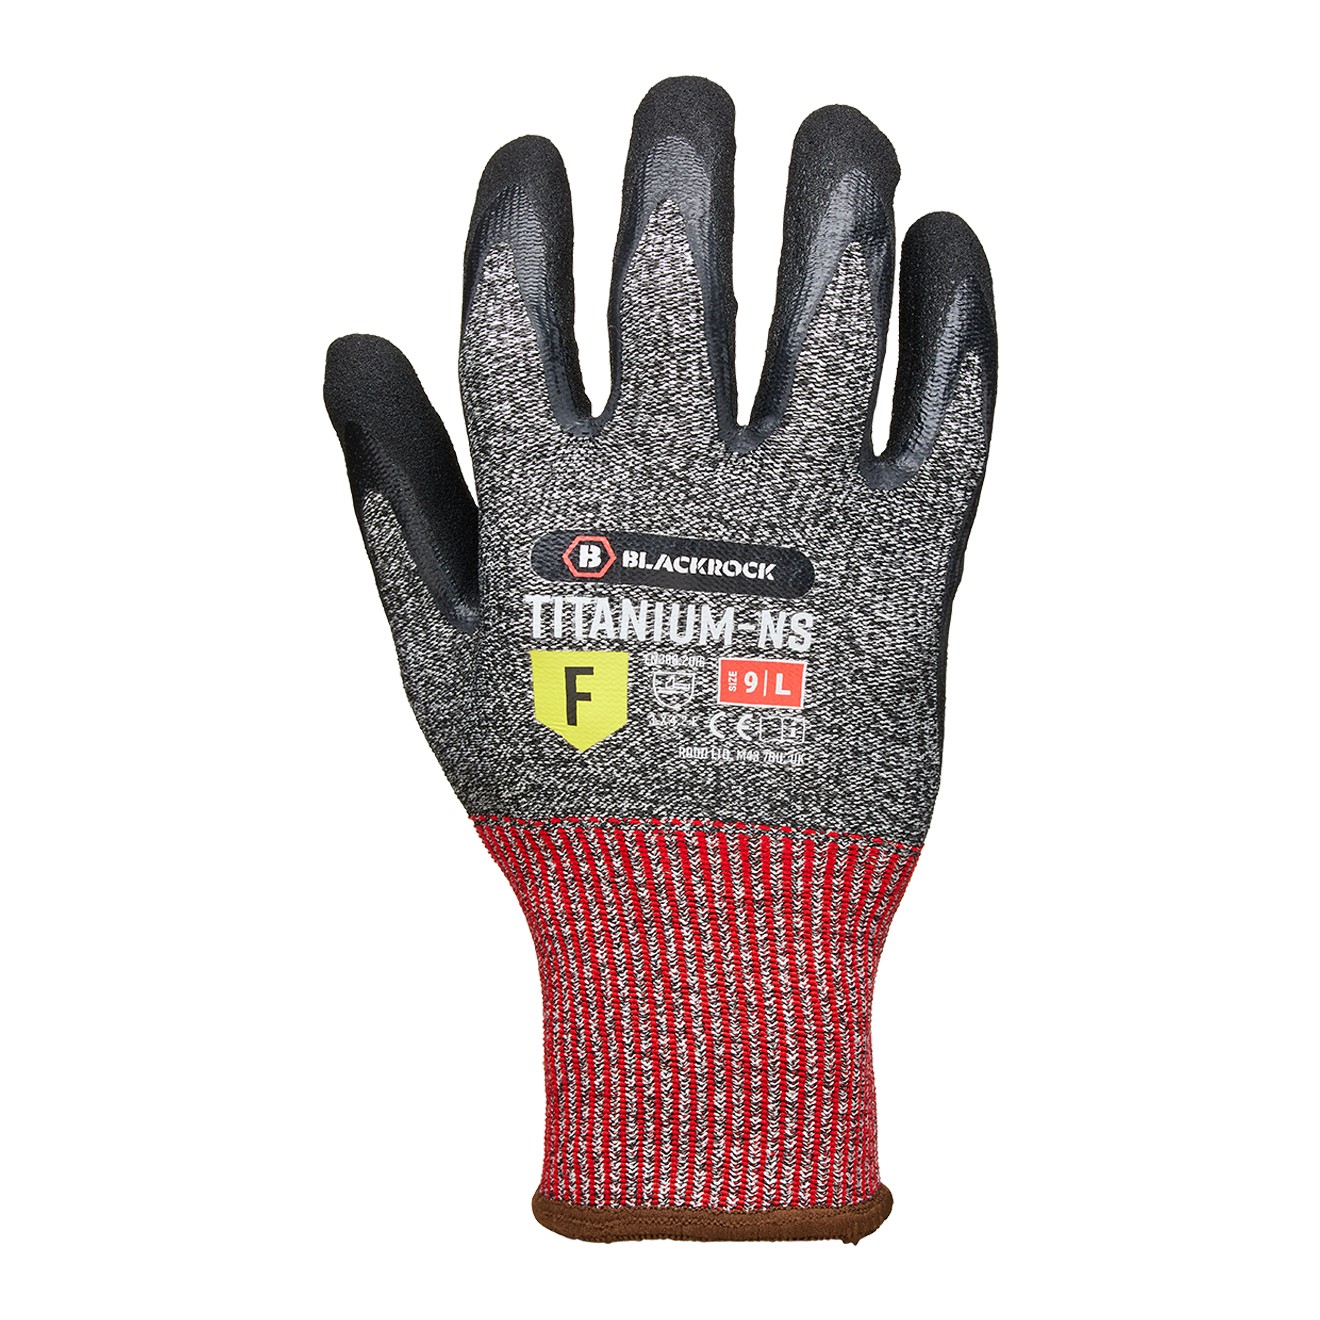 Titanium-NS Cut Resistant Glove